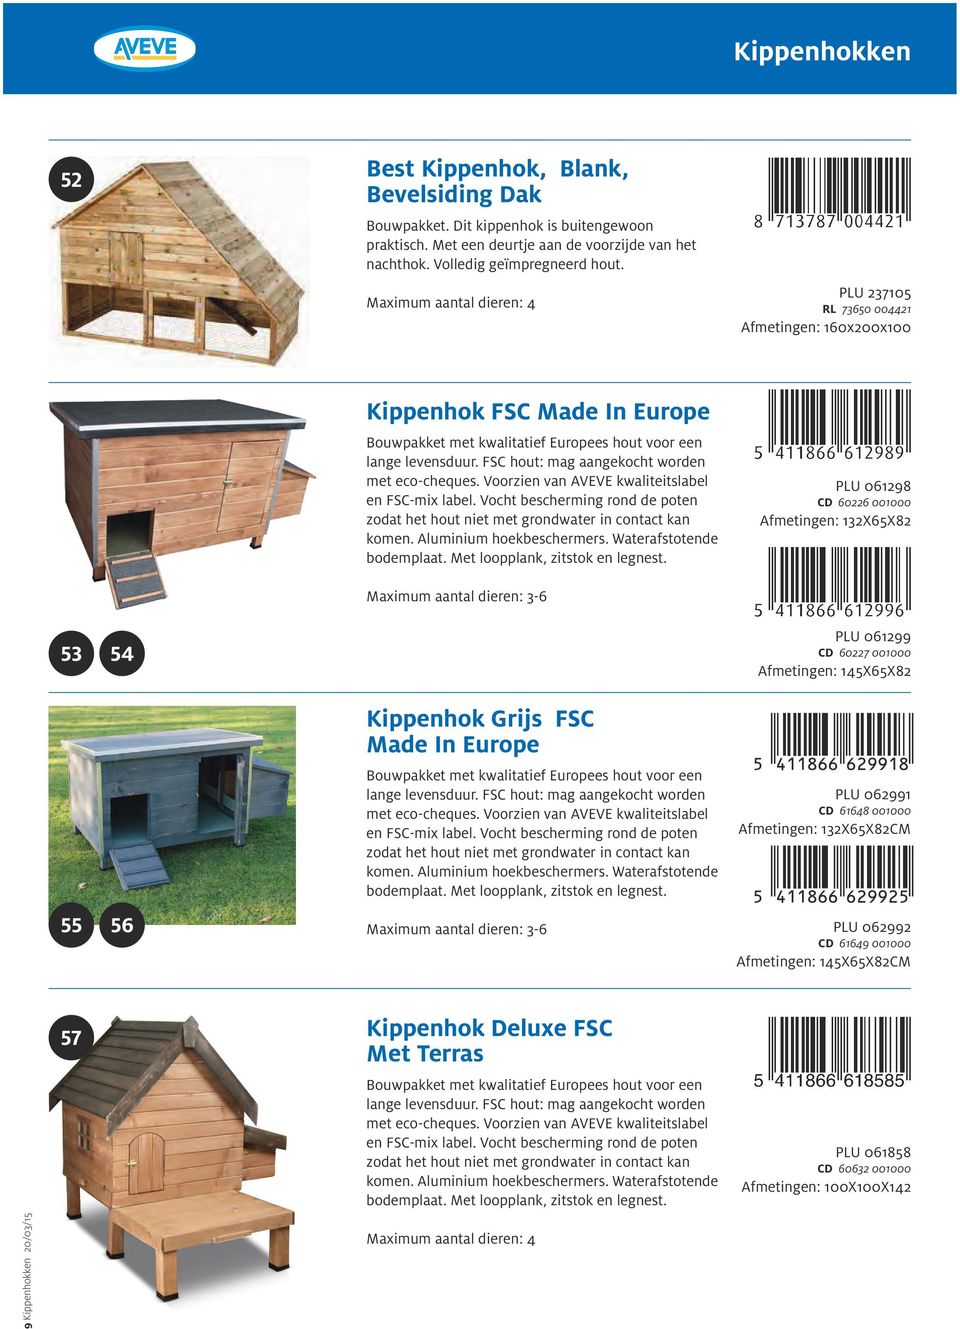 FSC hout: mag aangekocht worden met eco-cheques. Voorzien van AVEVE kwaliteitslabel en FSC-mix label. Vocht bescherming rond de poten zodat het hout niet met grondwater in contact kan komen.